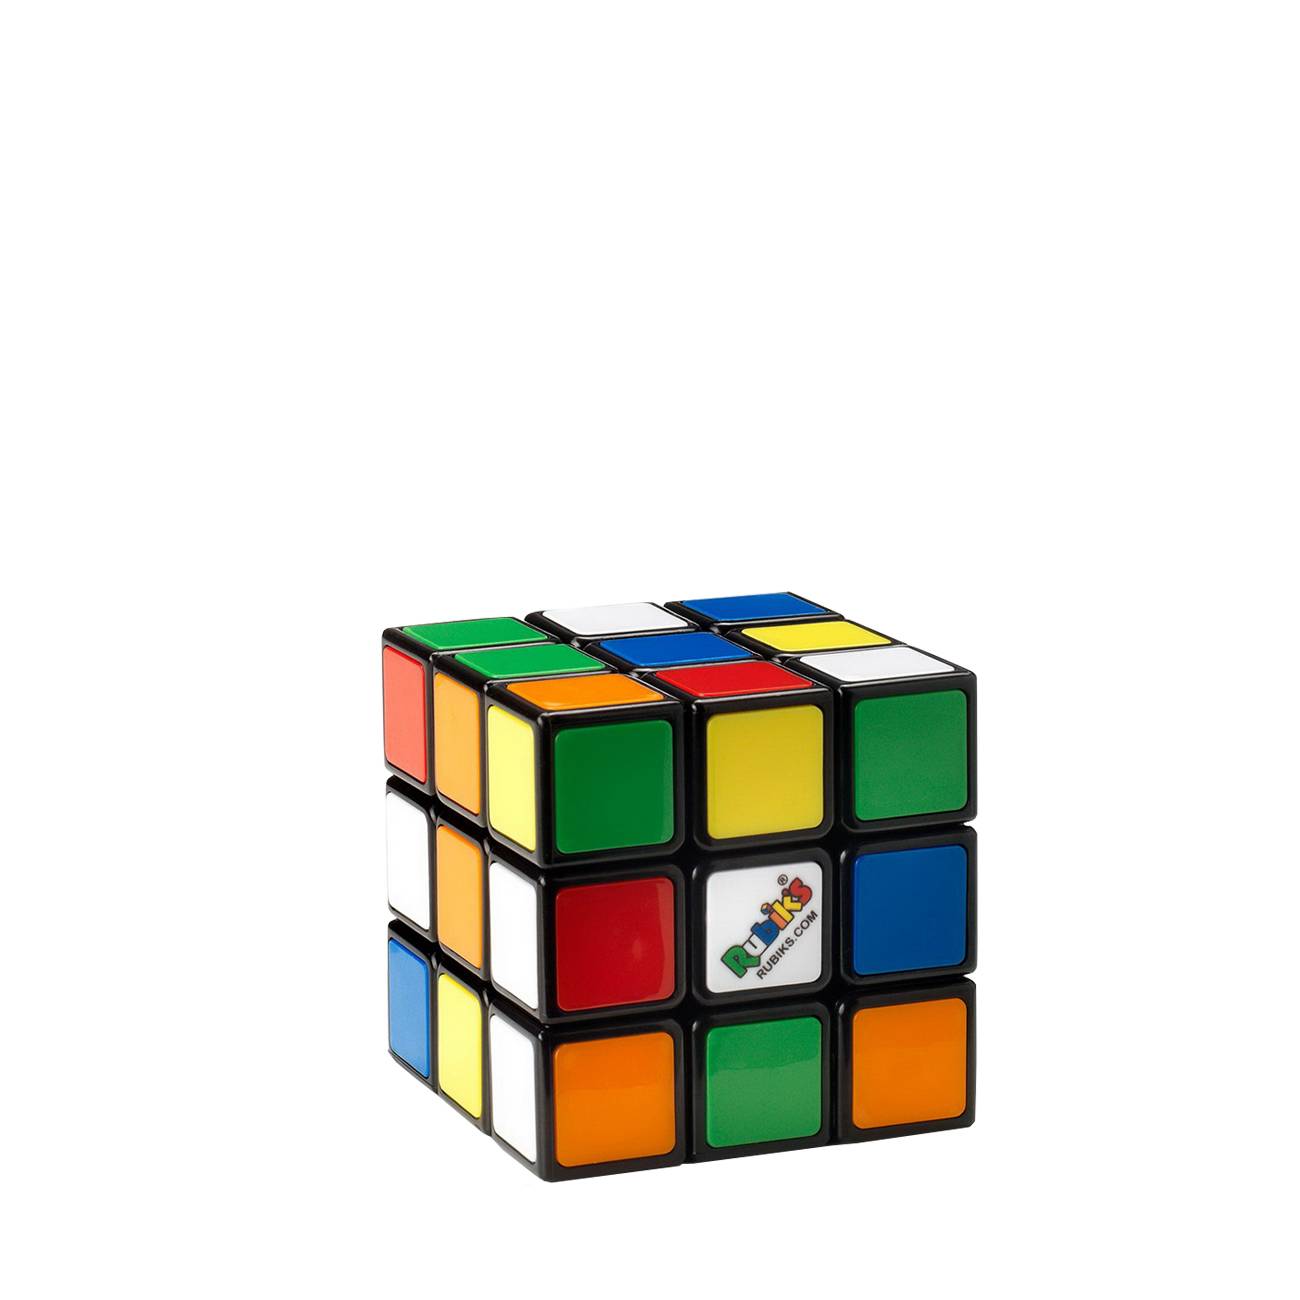 Cube 3 x 3